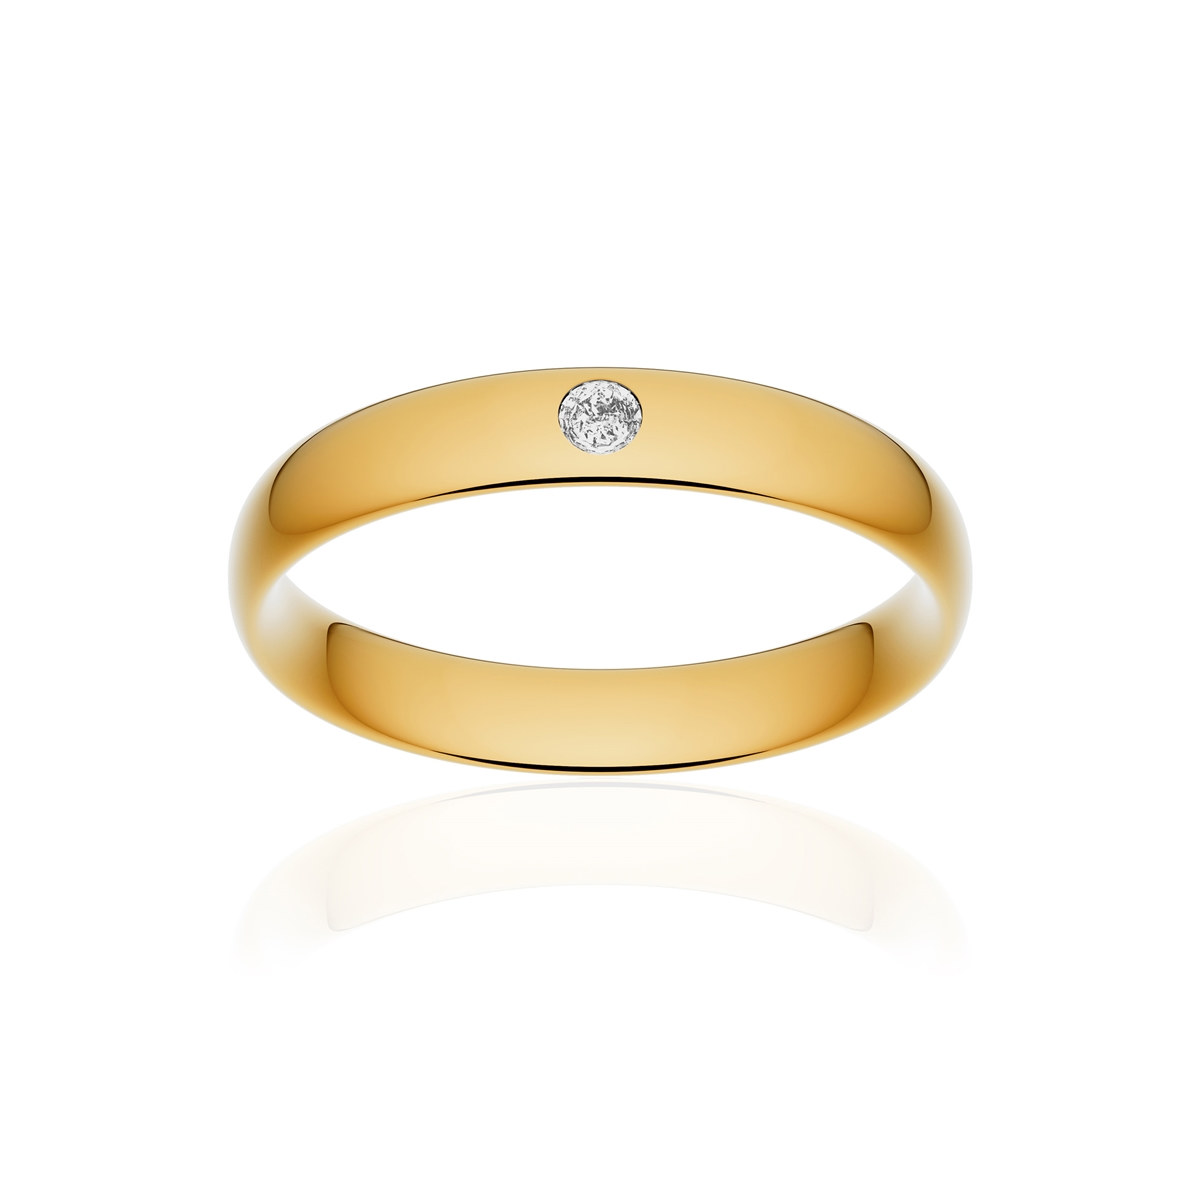 Alliance or 750 jaune poli demi-jonc confort 4mm diamant brillant